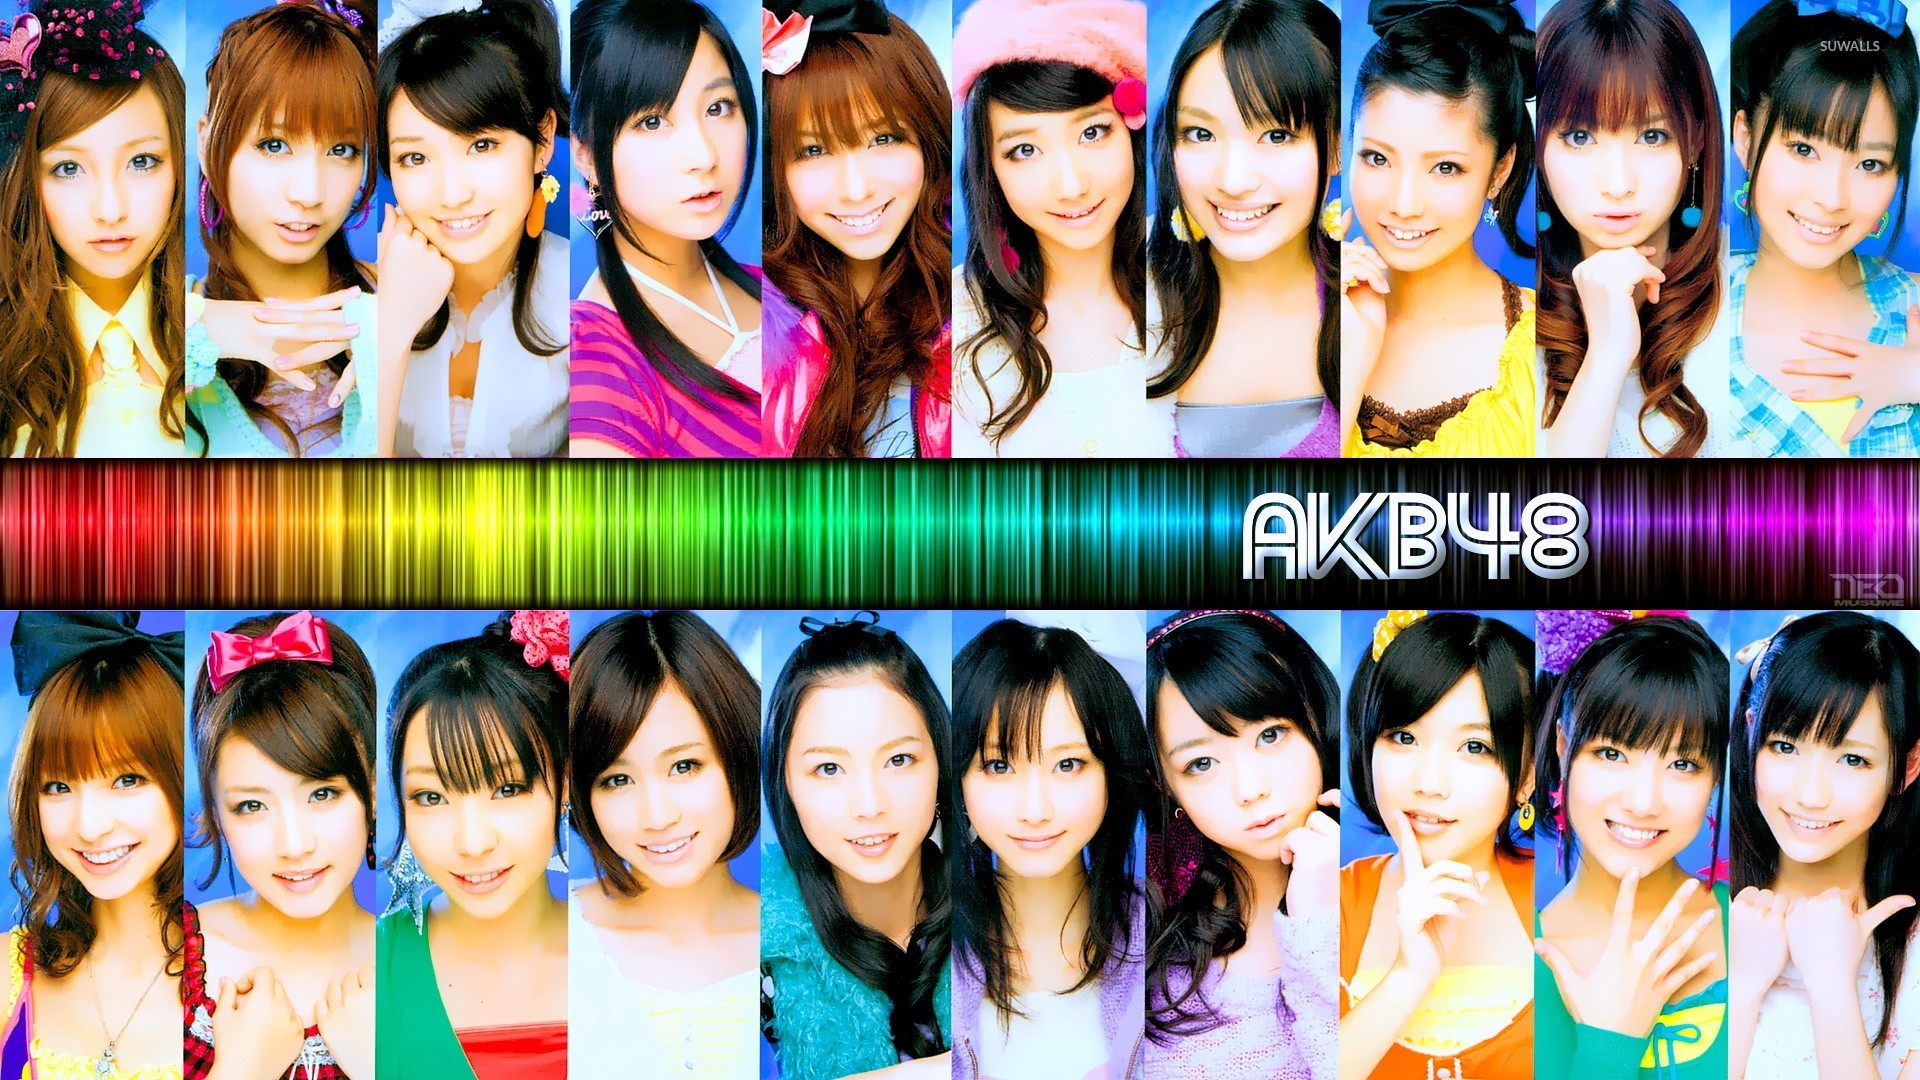 AKB48 8 Wallpaper Music Wallpapers 29495